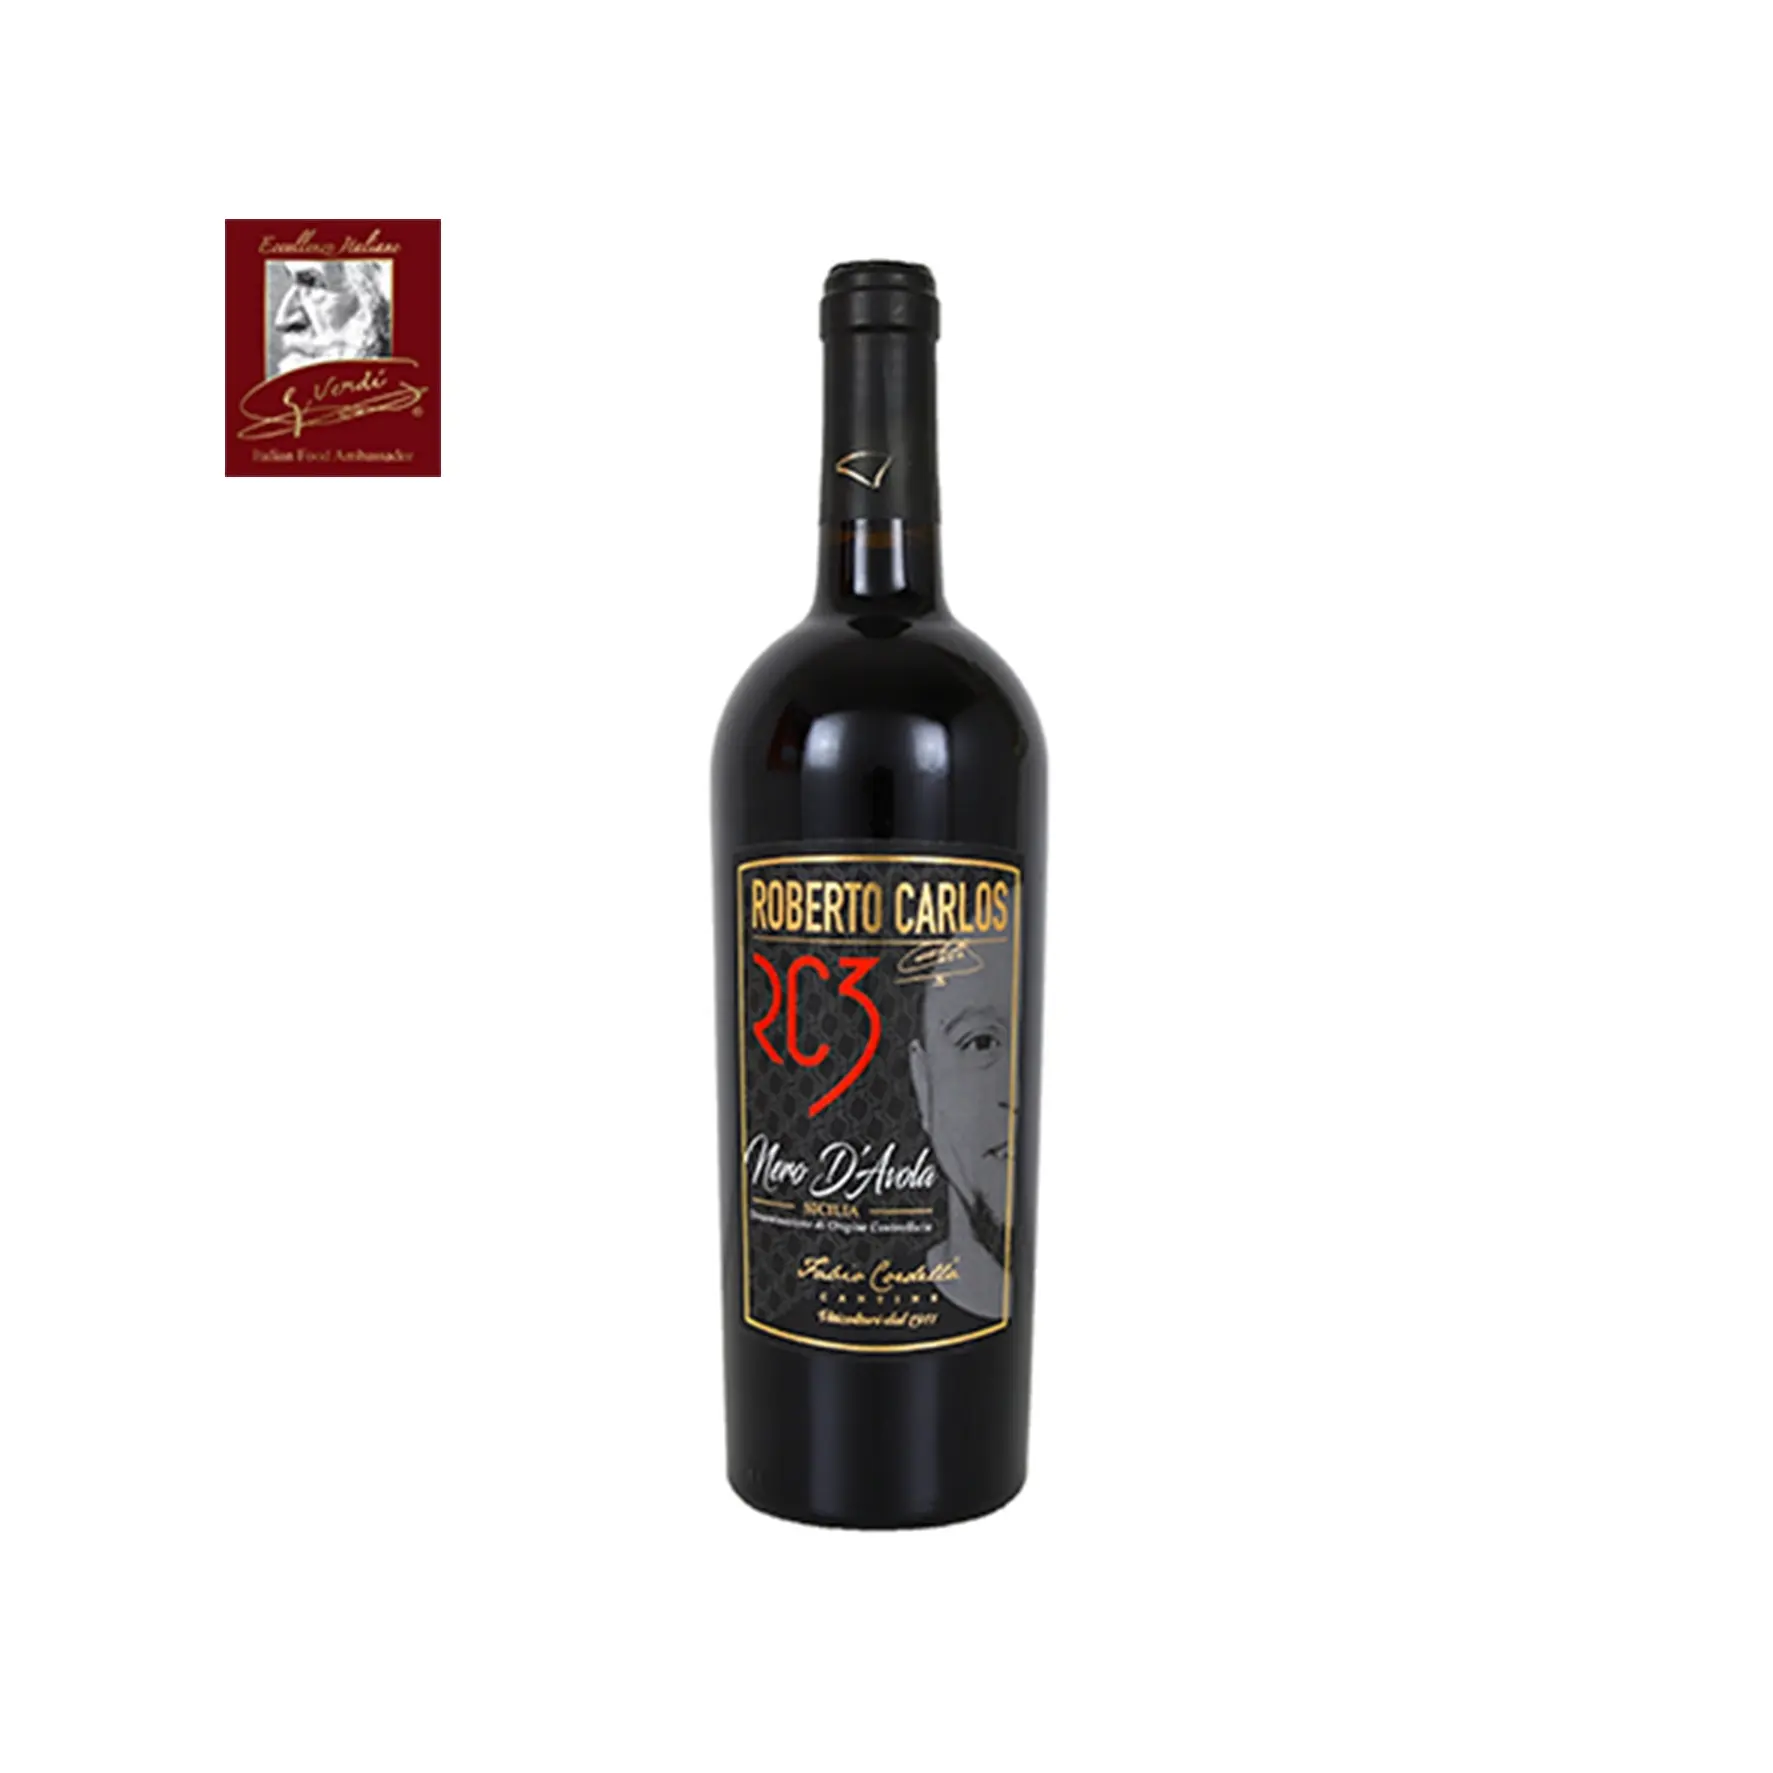 Roberto Carlos RC3 Italienischer Rotwein NERO D'AVOLA DOC 0,750 Liter Flaschen Der Wein von Champions GVERDI Selection Made Italy Wein